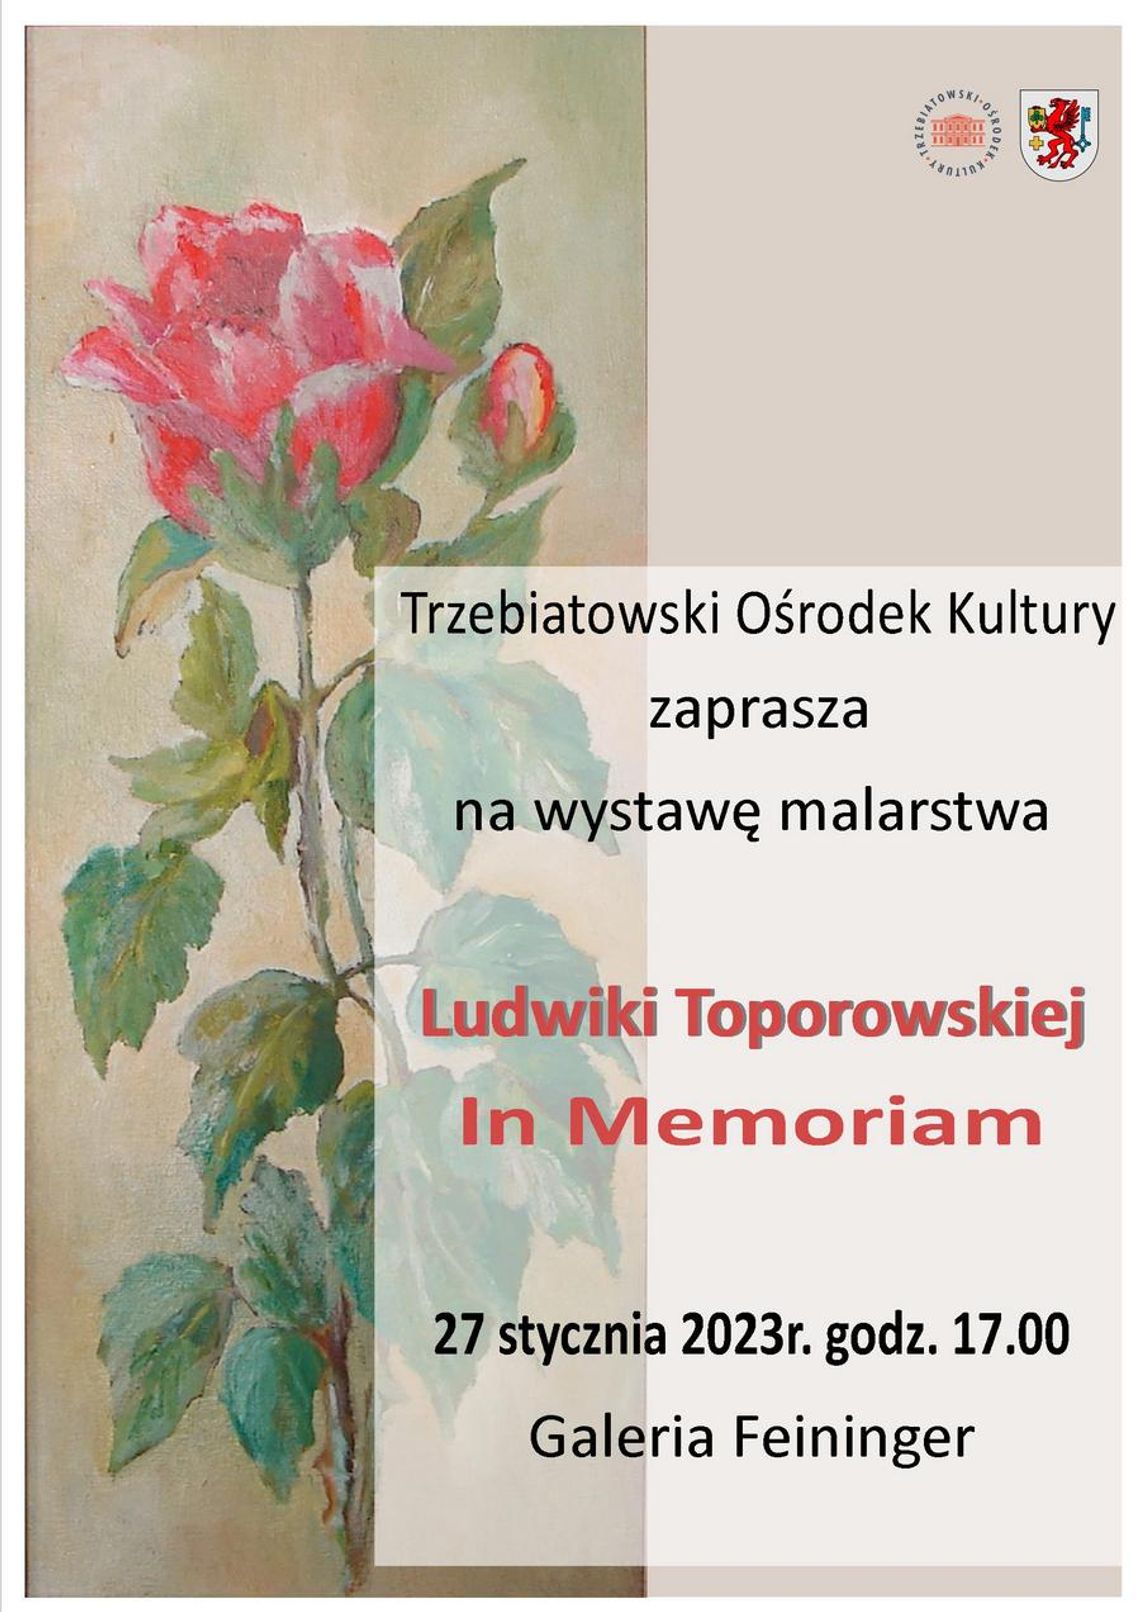 TOK zaprasza na  wystawę malarstwa Ludwiki Toporowskiej  In Memoriam